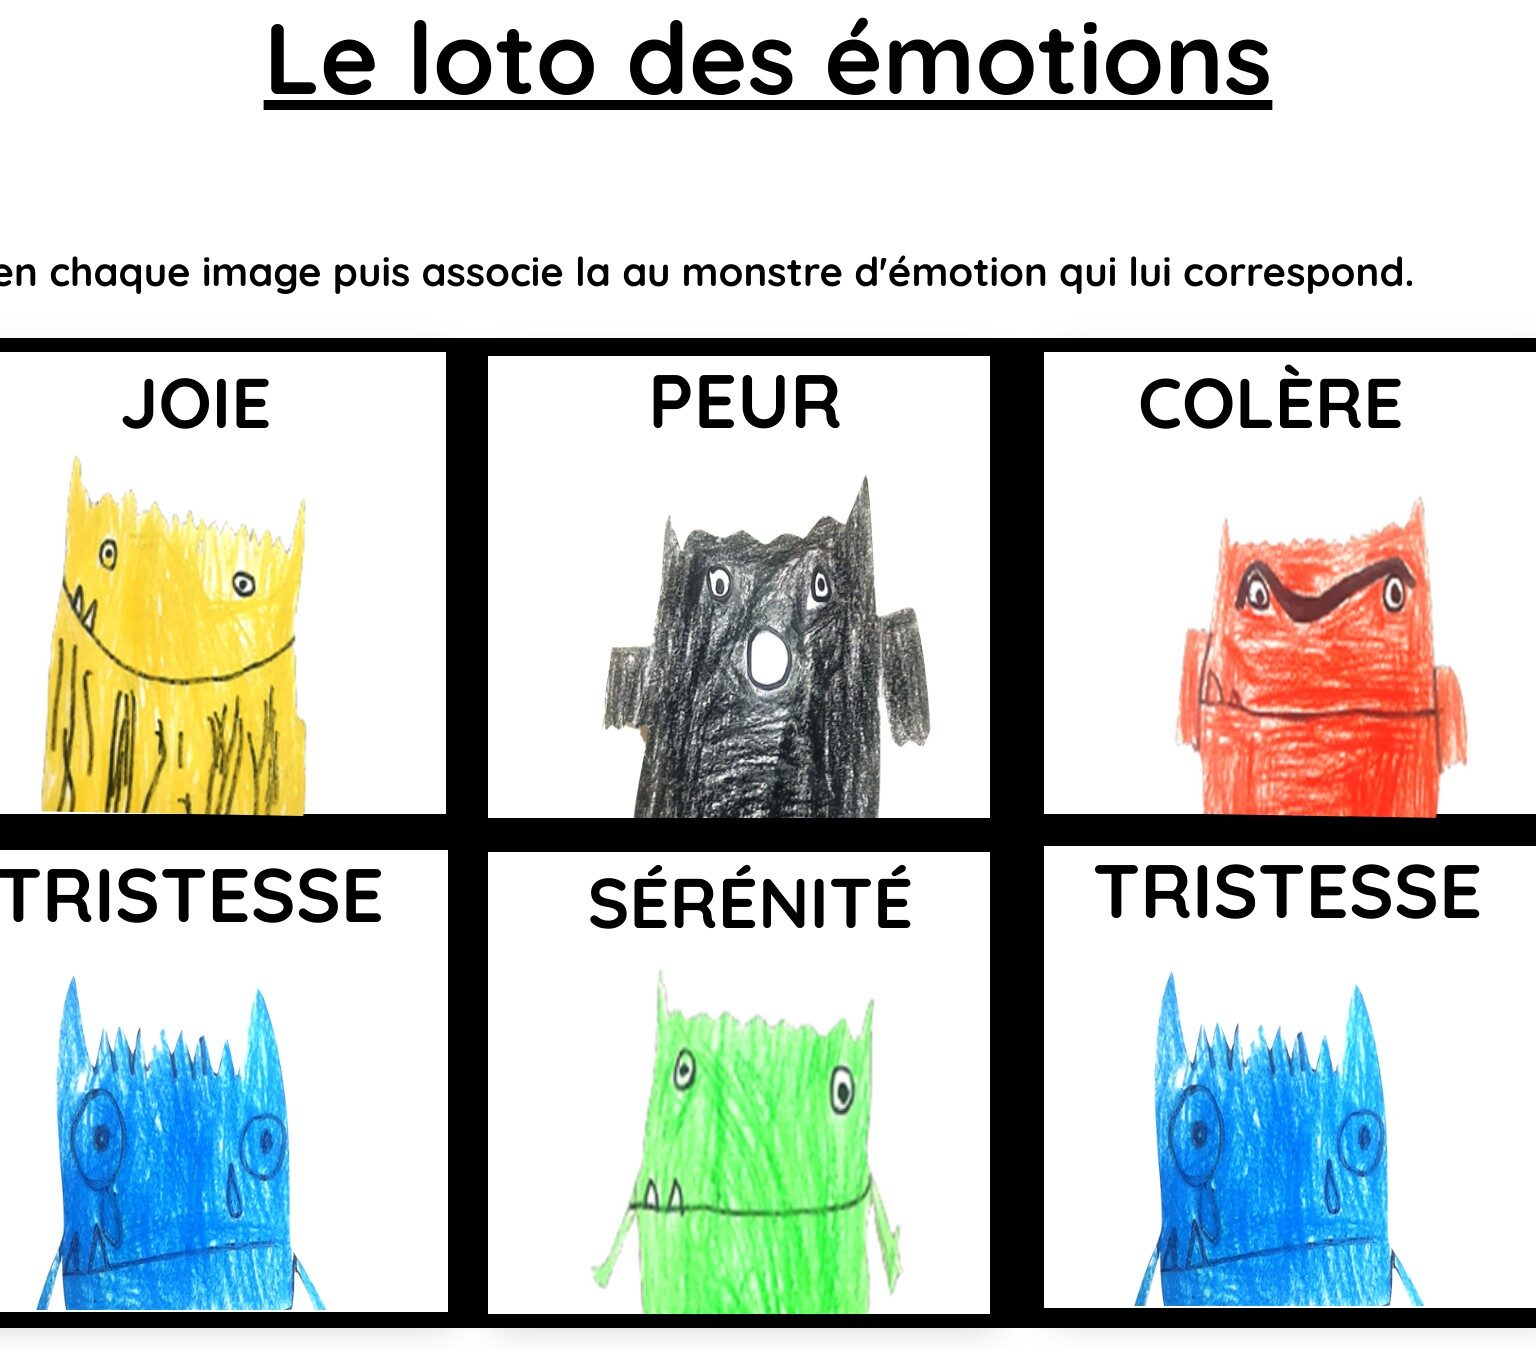 Le loto des émotions